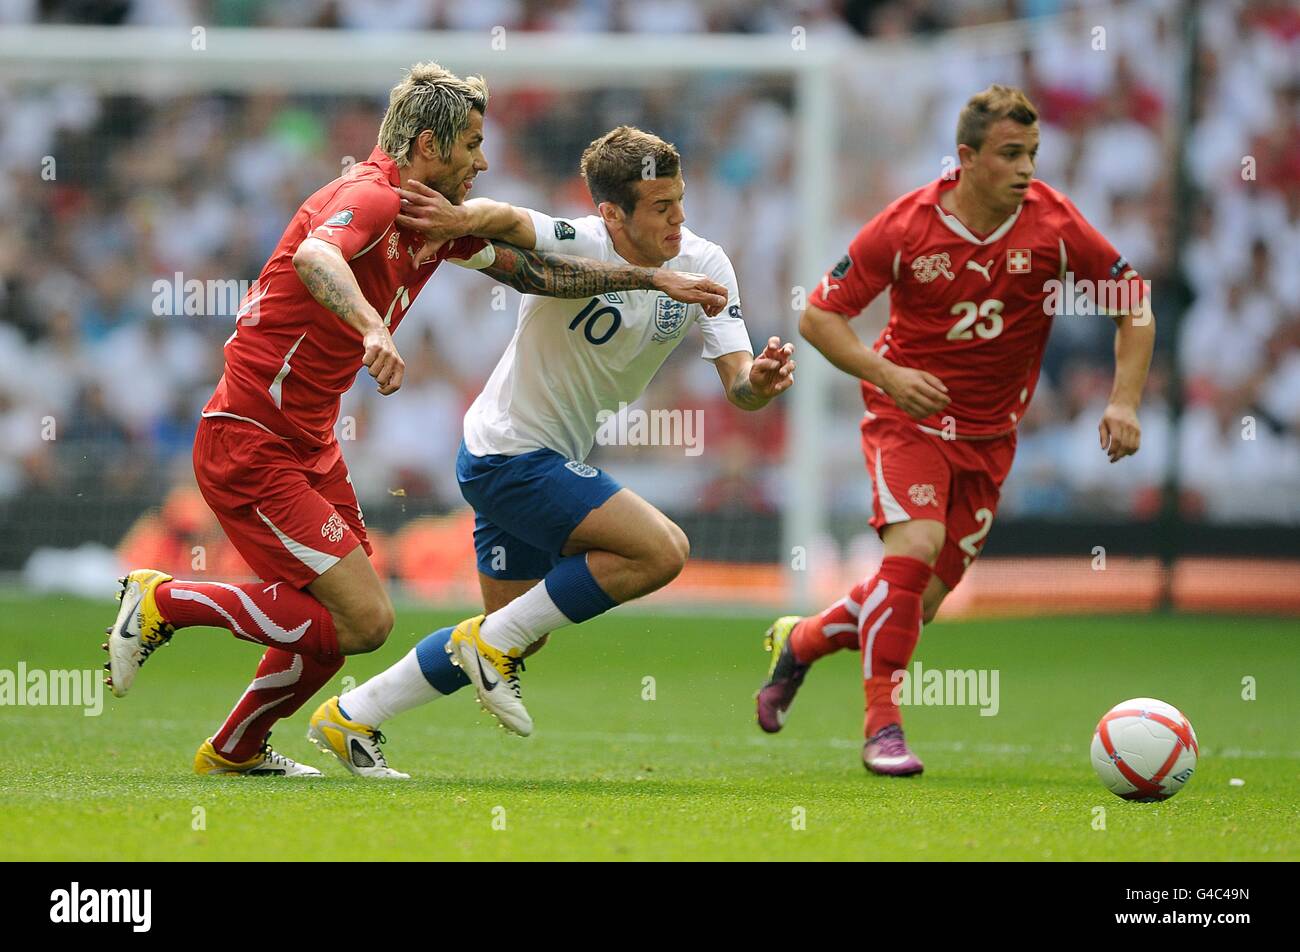 Soccer - UEFA Euro 2012 - Qualifying - Group G - England v Switzerland - Wembley Stadium. Switzerland's Valon Behrami (left) and England's Jack Wilshere (centre) battle for the ball Stock Photo